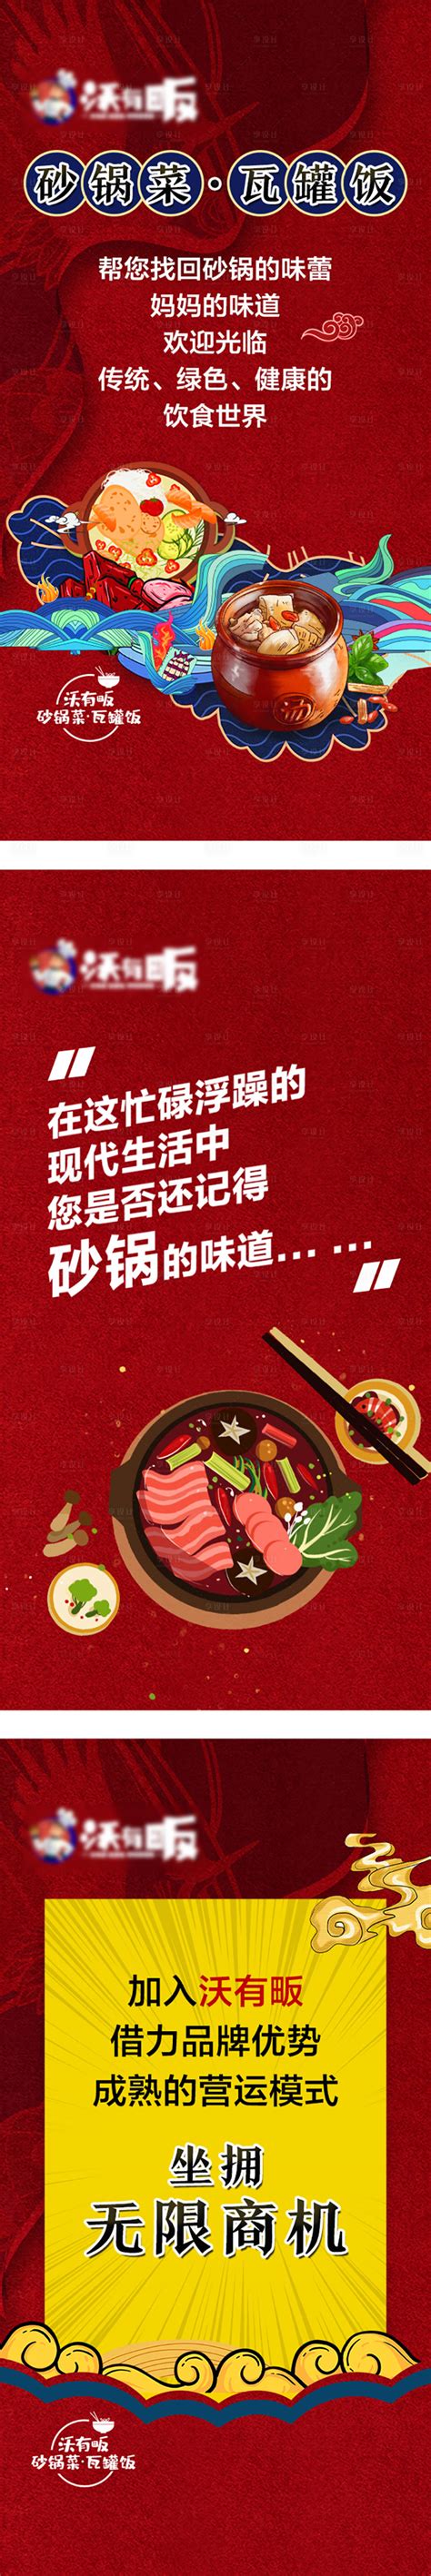 砂锅菜瓦罐饭加盟系列海报PSD广告设计素材海报模板免费下载-享设计